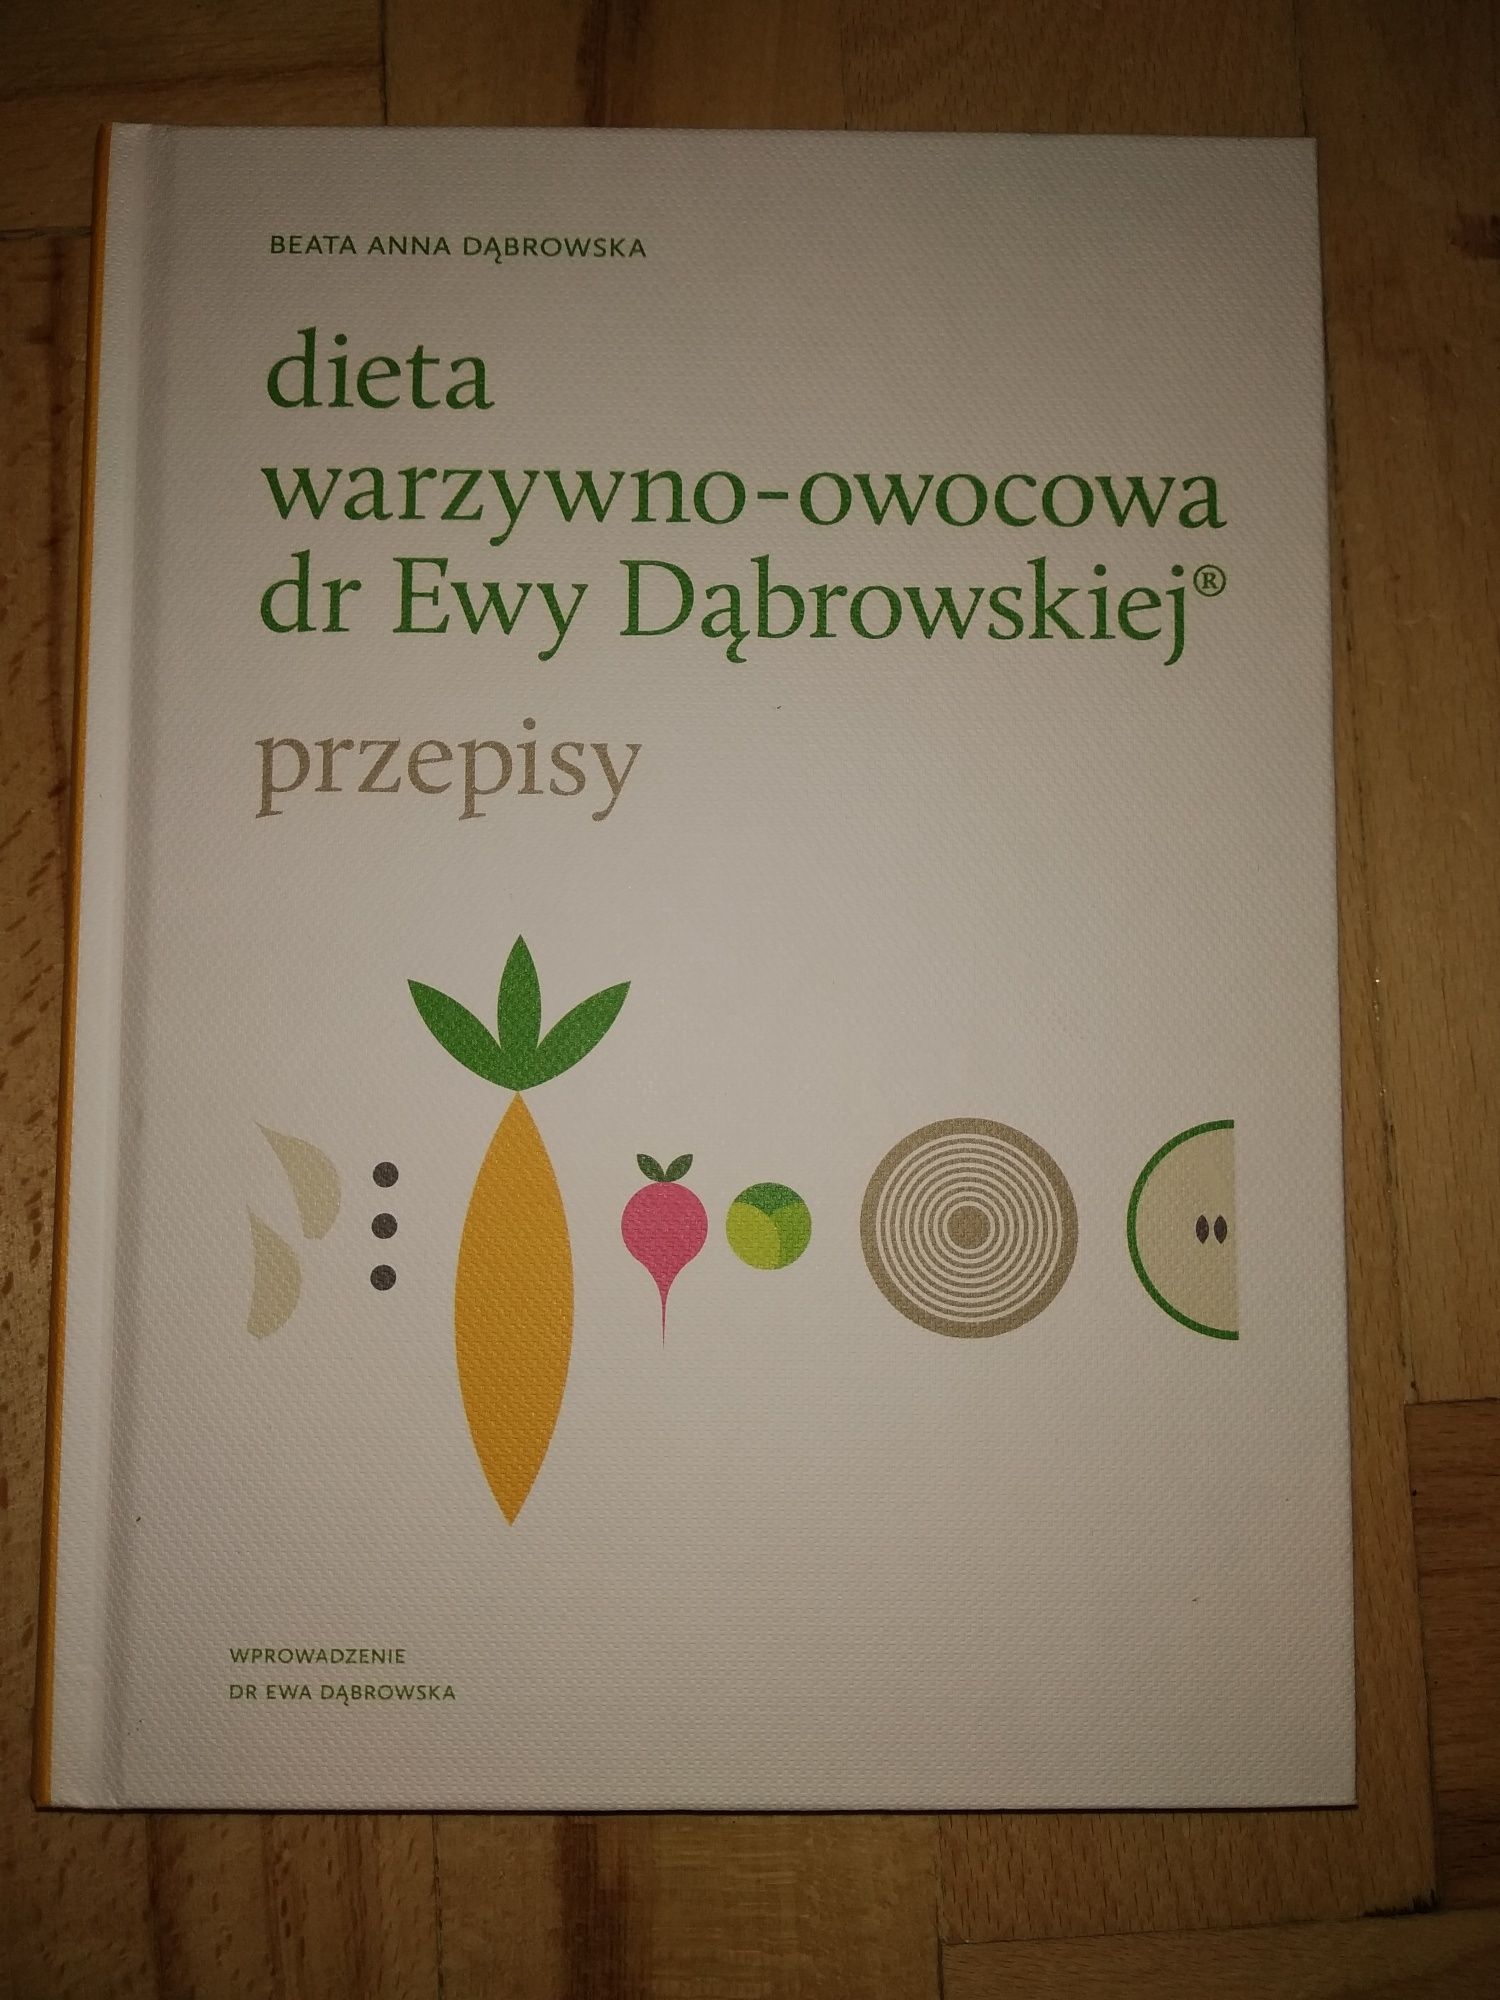 Dieta warzywno owocowa dr Ewy Dąbrowskiej przepisy